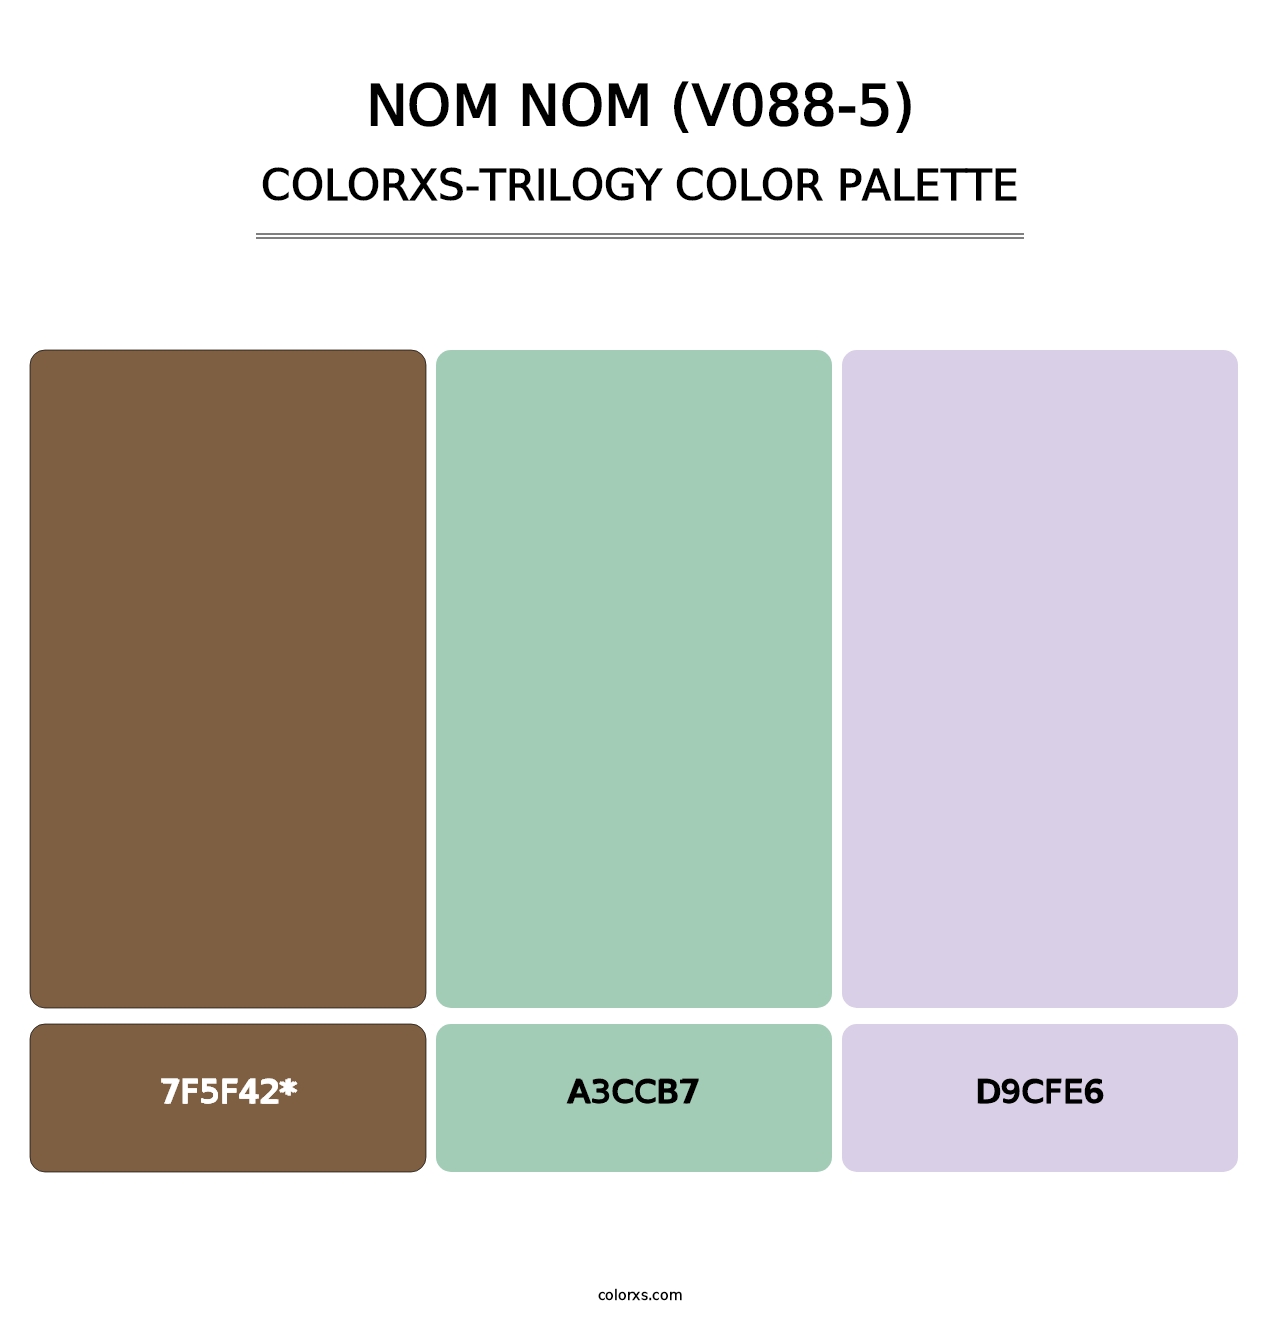 Nom Nom (V088-5) - Colorxs Trilogy Palette